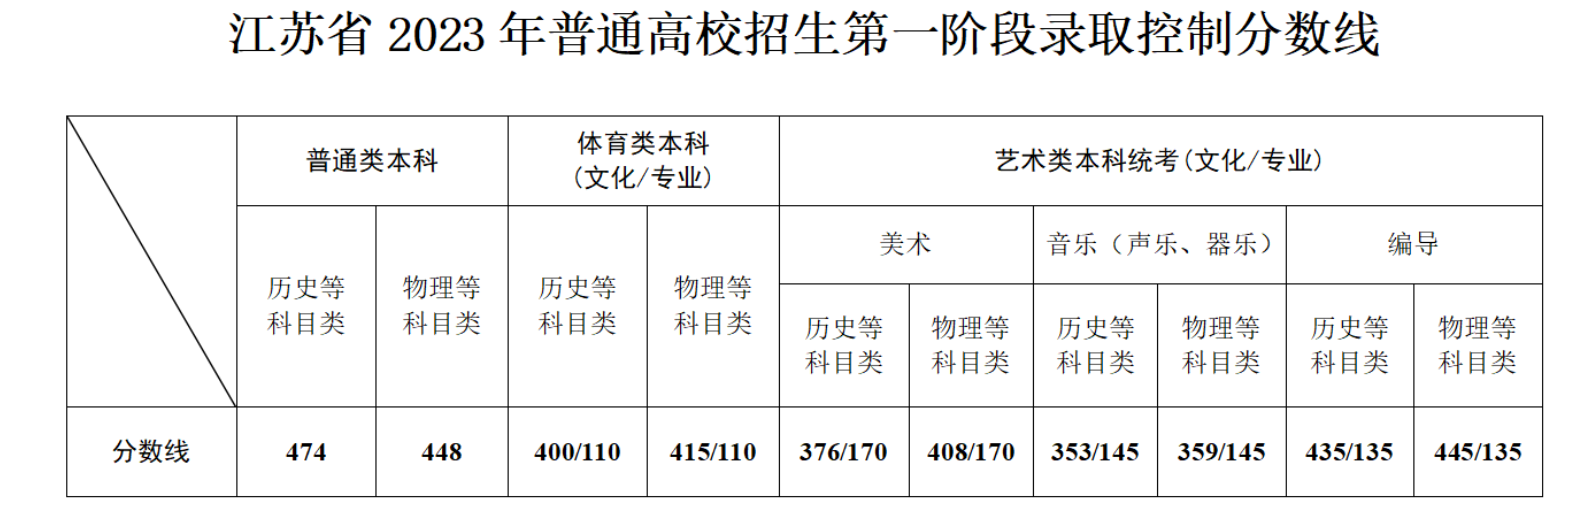 2023江苏高考分数线最新公布 本专科批次线